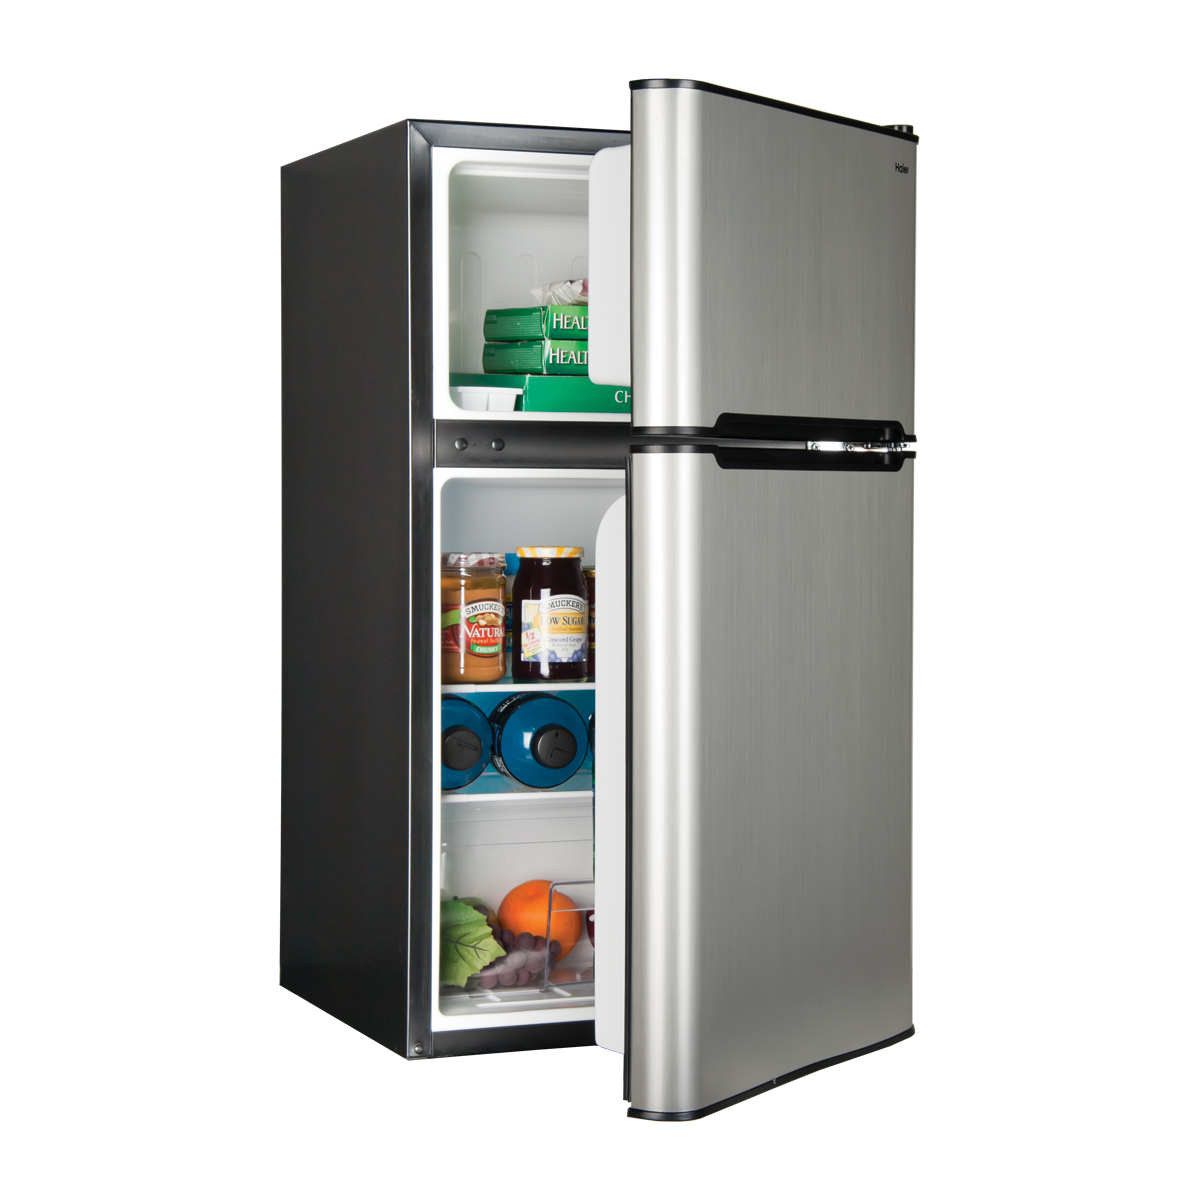 Запчасти для холодильника по выгодным ценам вы найдете в нашем Интернет-магазине